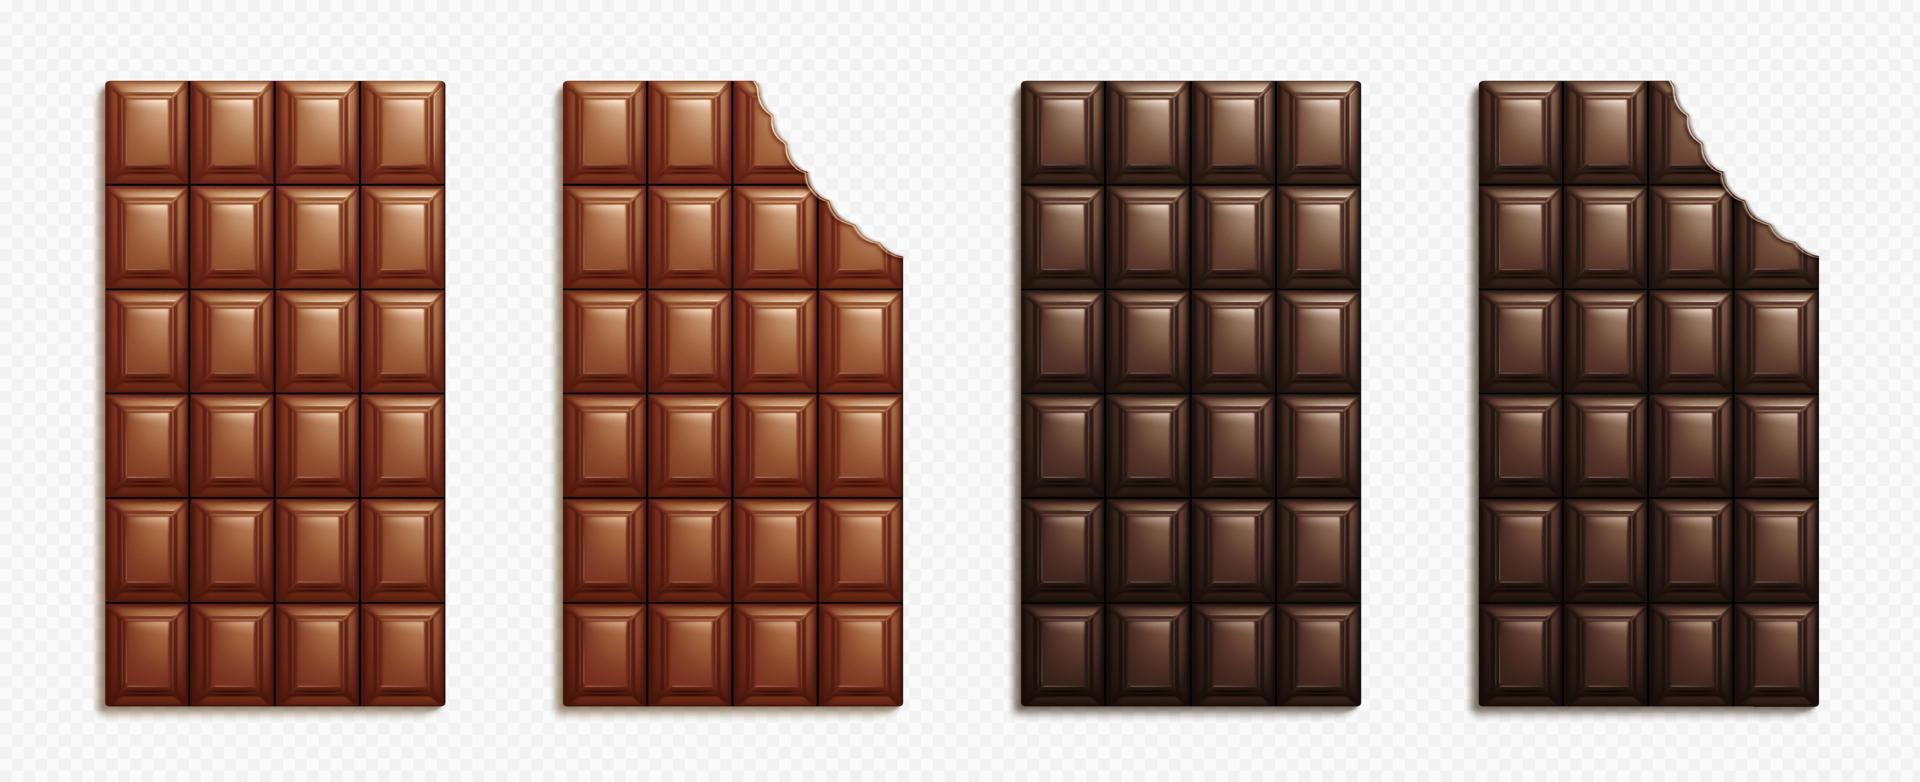 realistisch reeks van geheel en bijten chocola bars vector